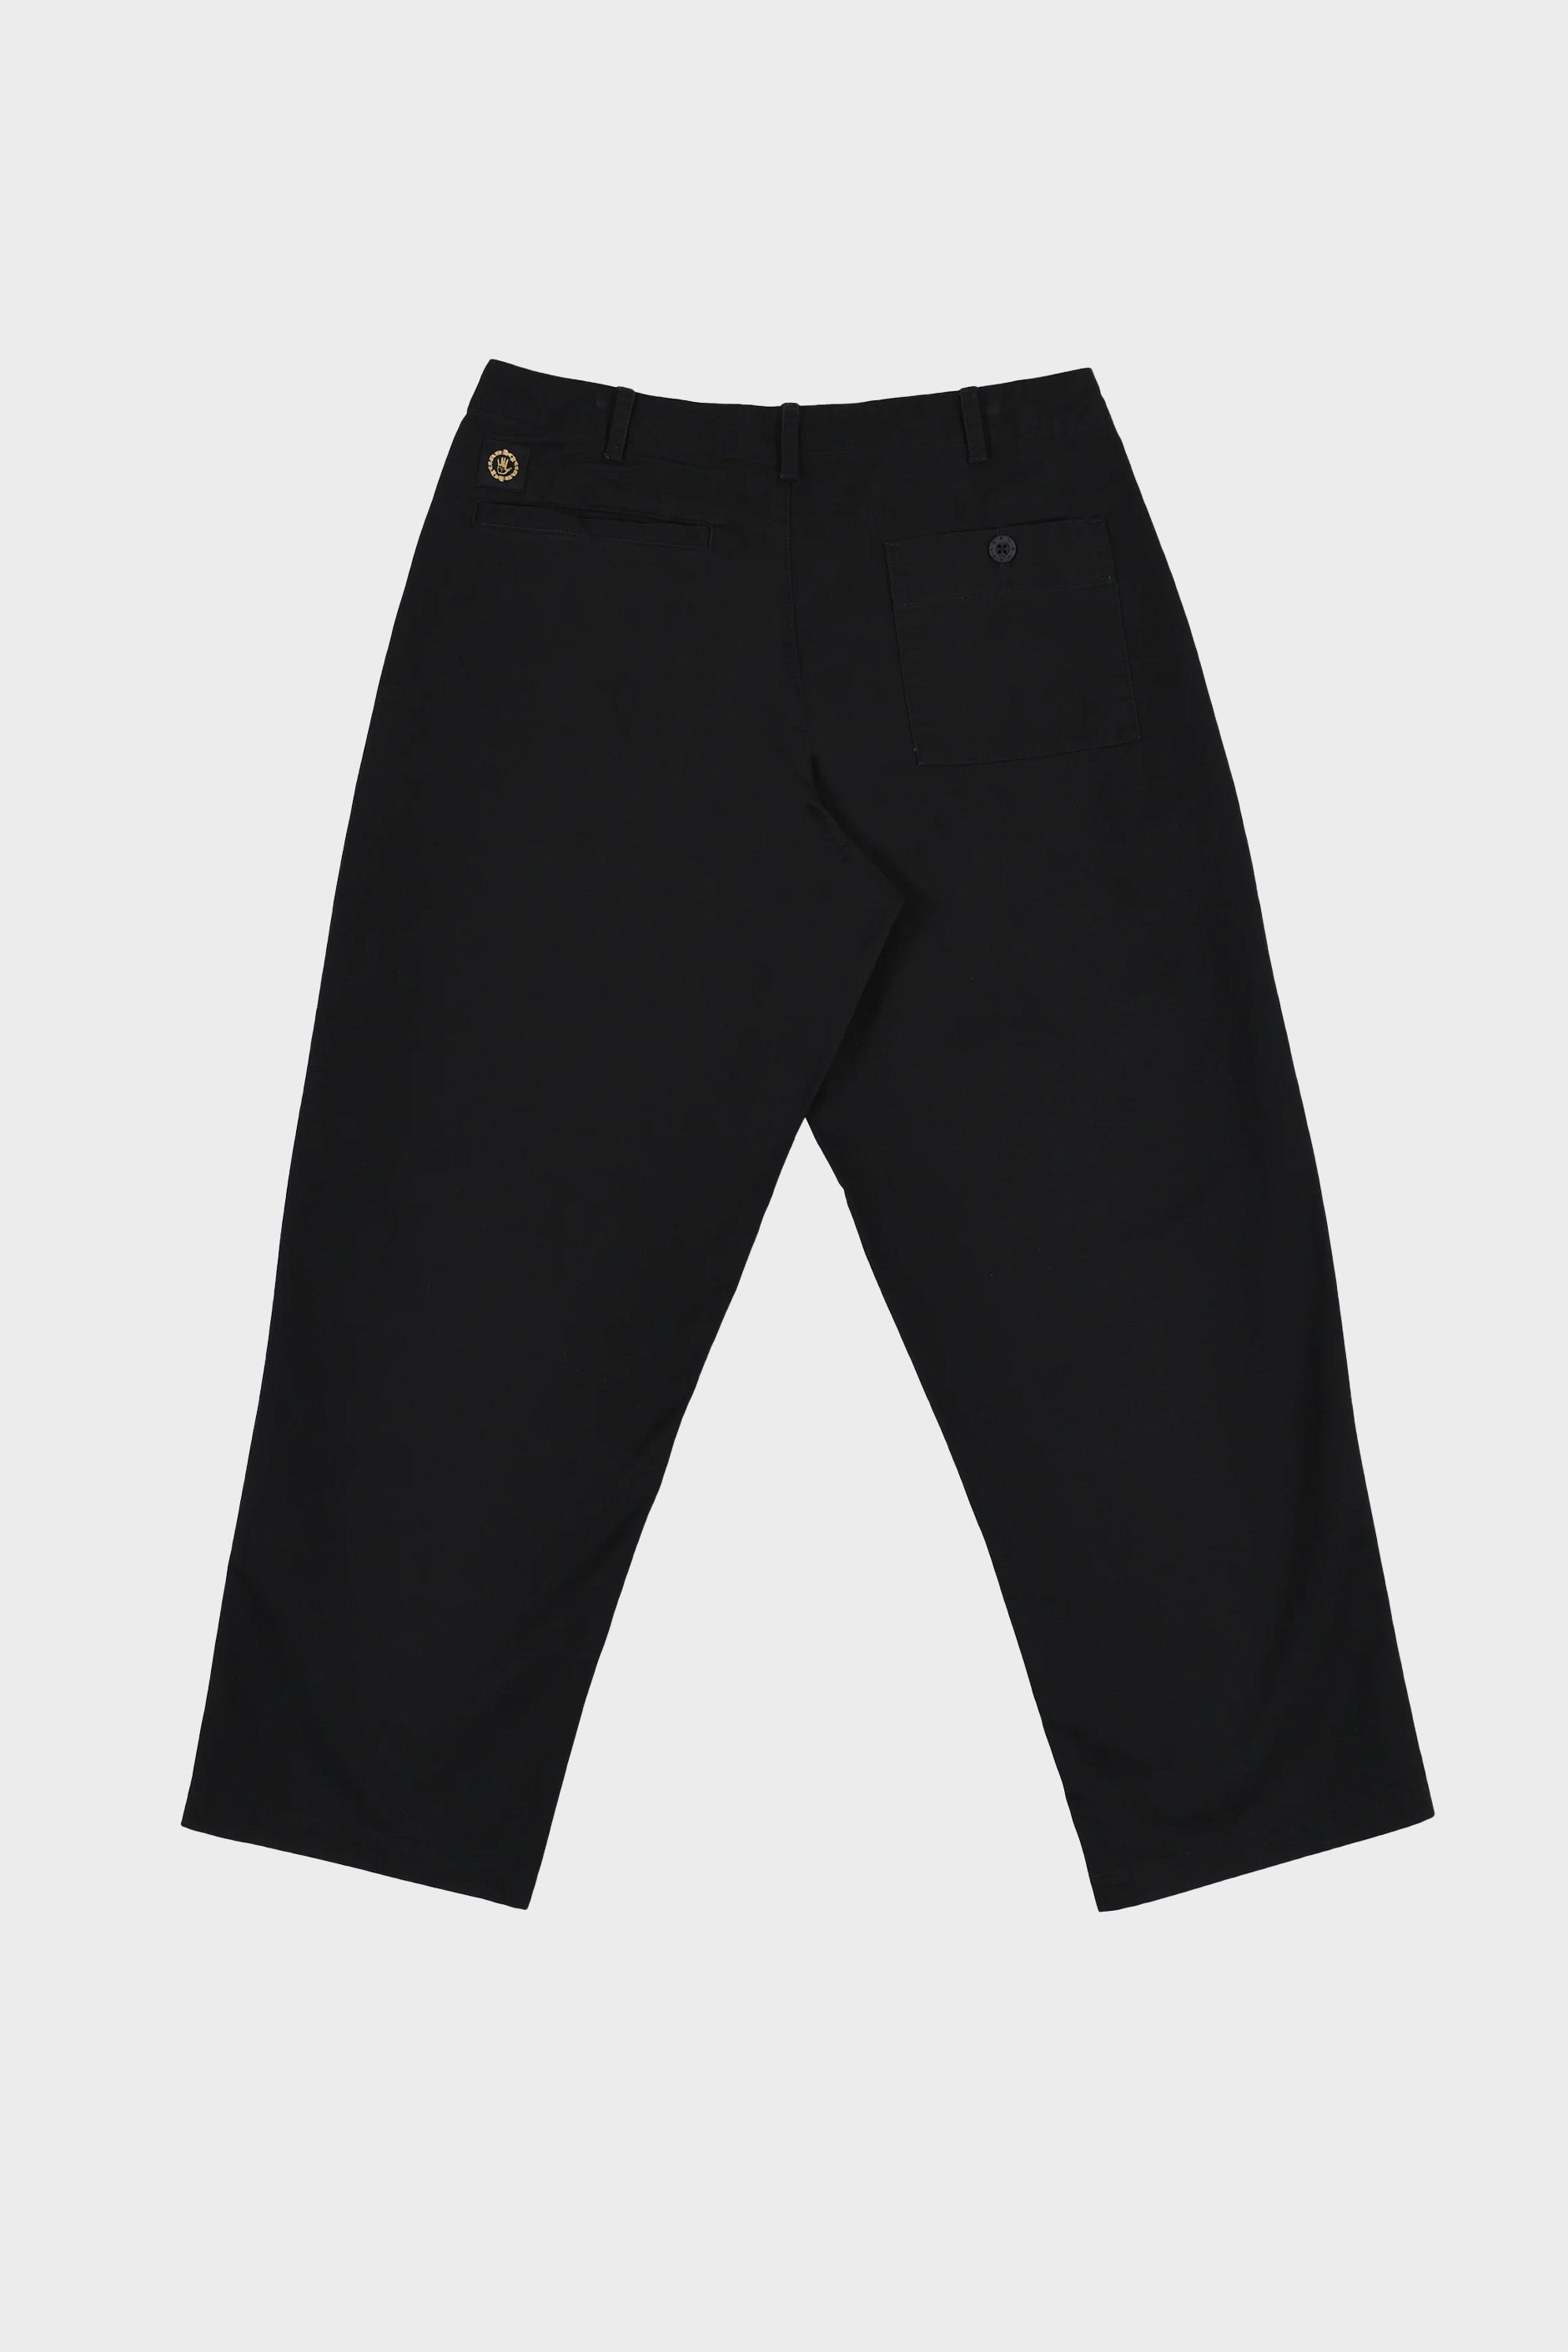 Selectshop FRAME - QUASI Warren Trouser Pant Bottoms Concept Store Dubai